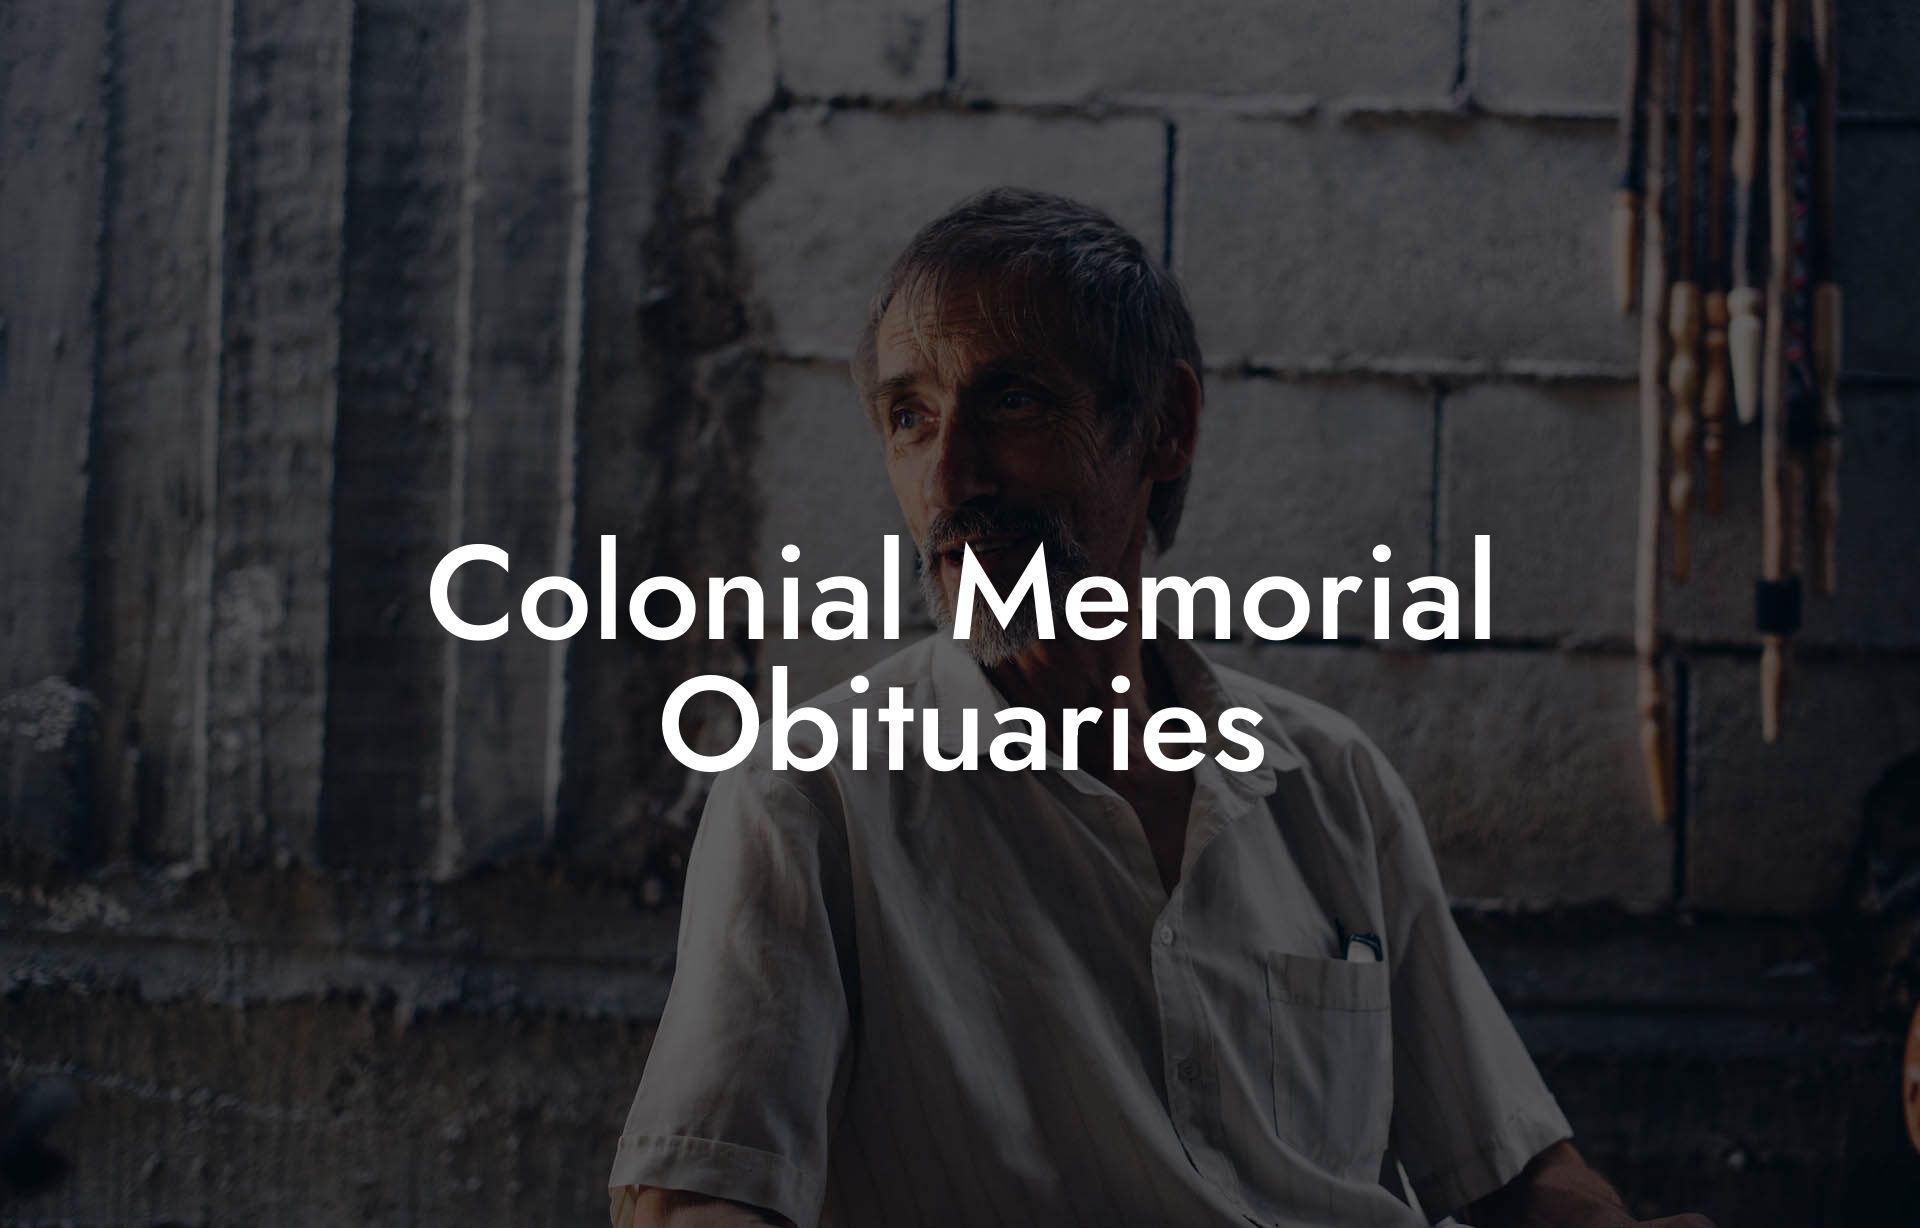 Colonial Memorial Obituaries